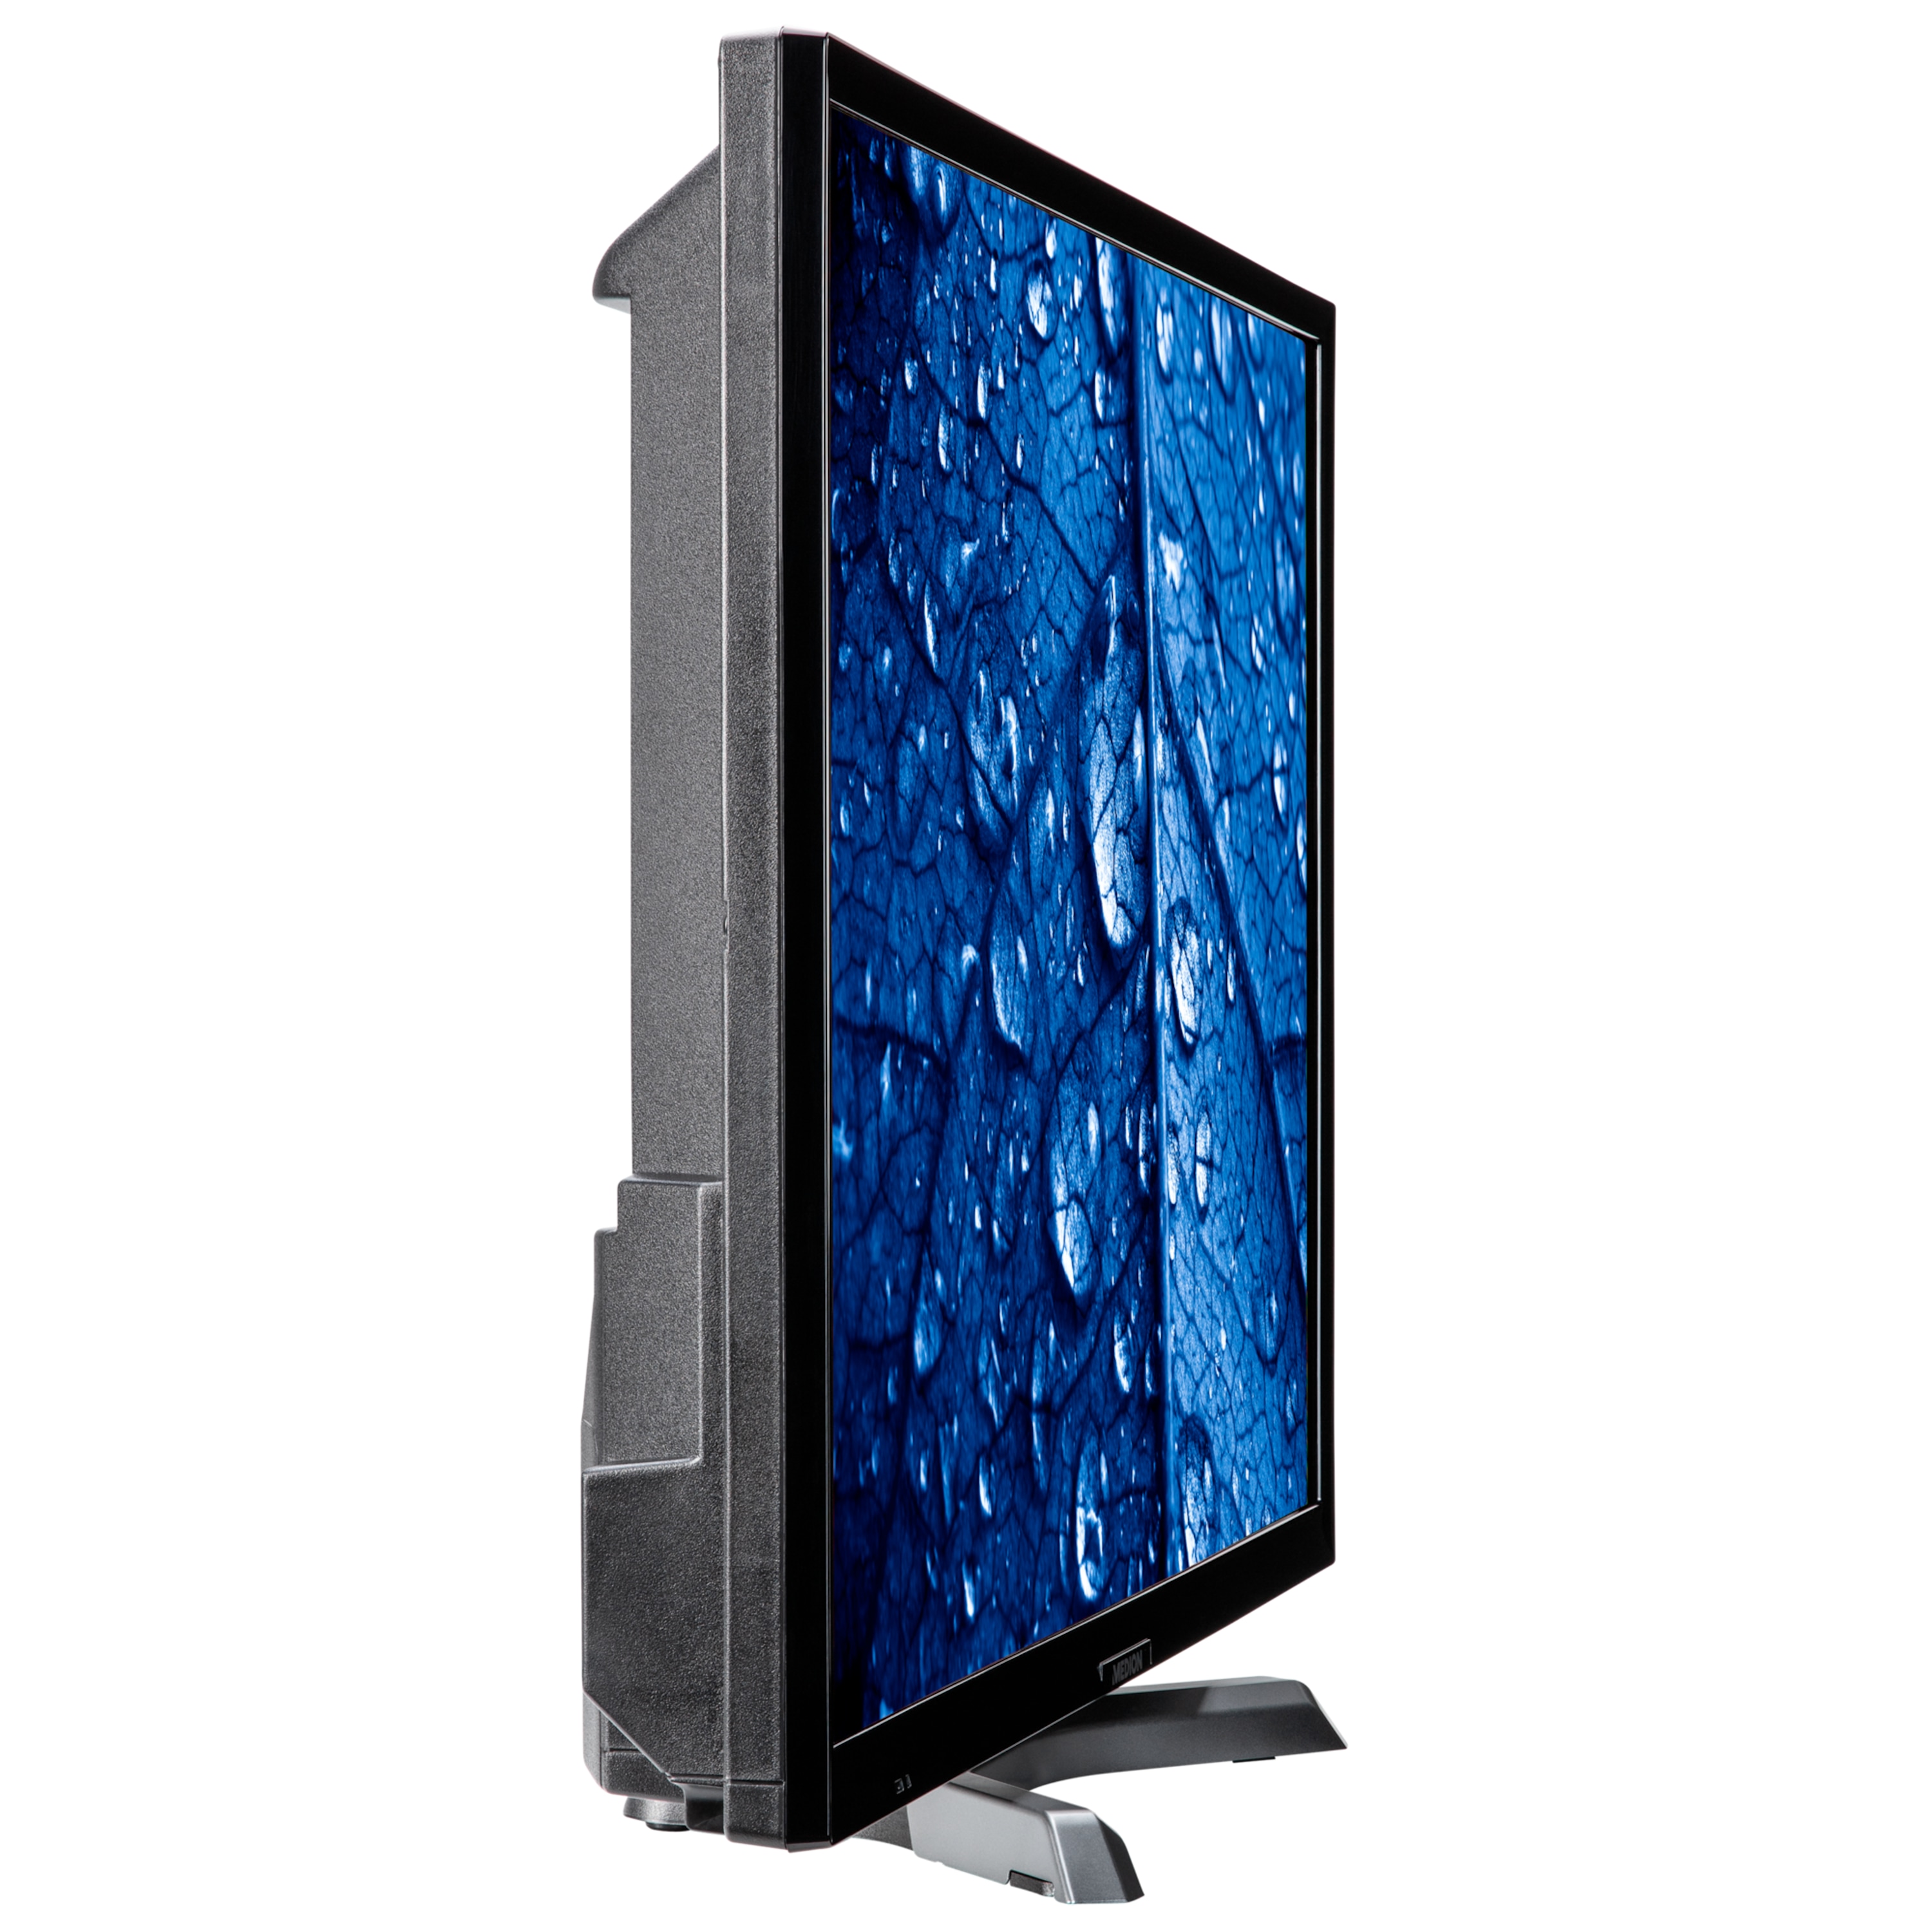 MEDION® LIFE® P13203 Smart-TV, 80 cm (31,5'') Full HD Fernseher, inkl. DVB-T 2 HD Modul (12 Monate freenet TV gratis) - ARTIKELSET